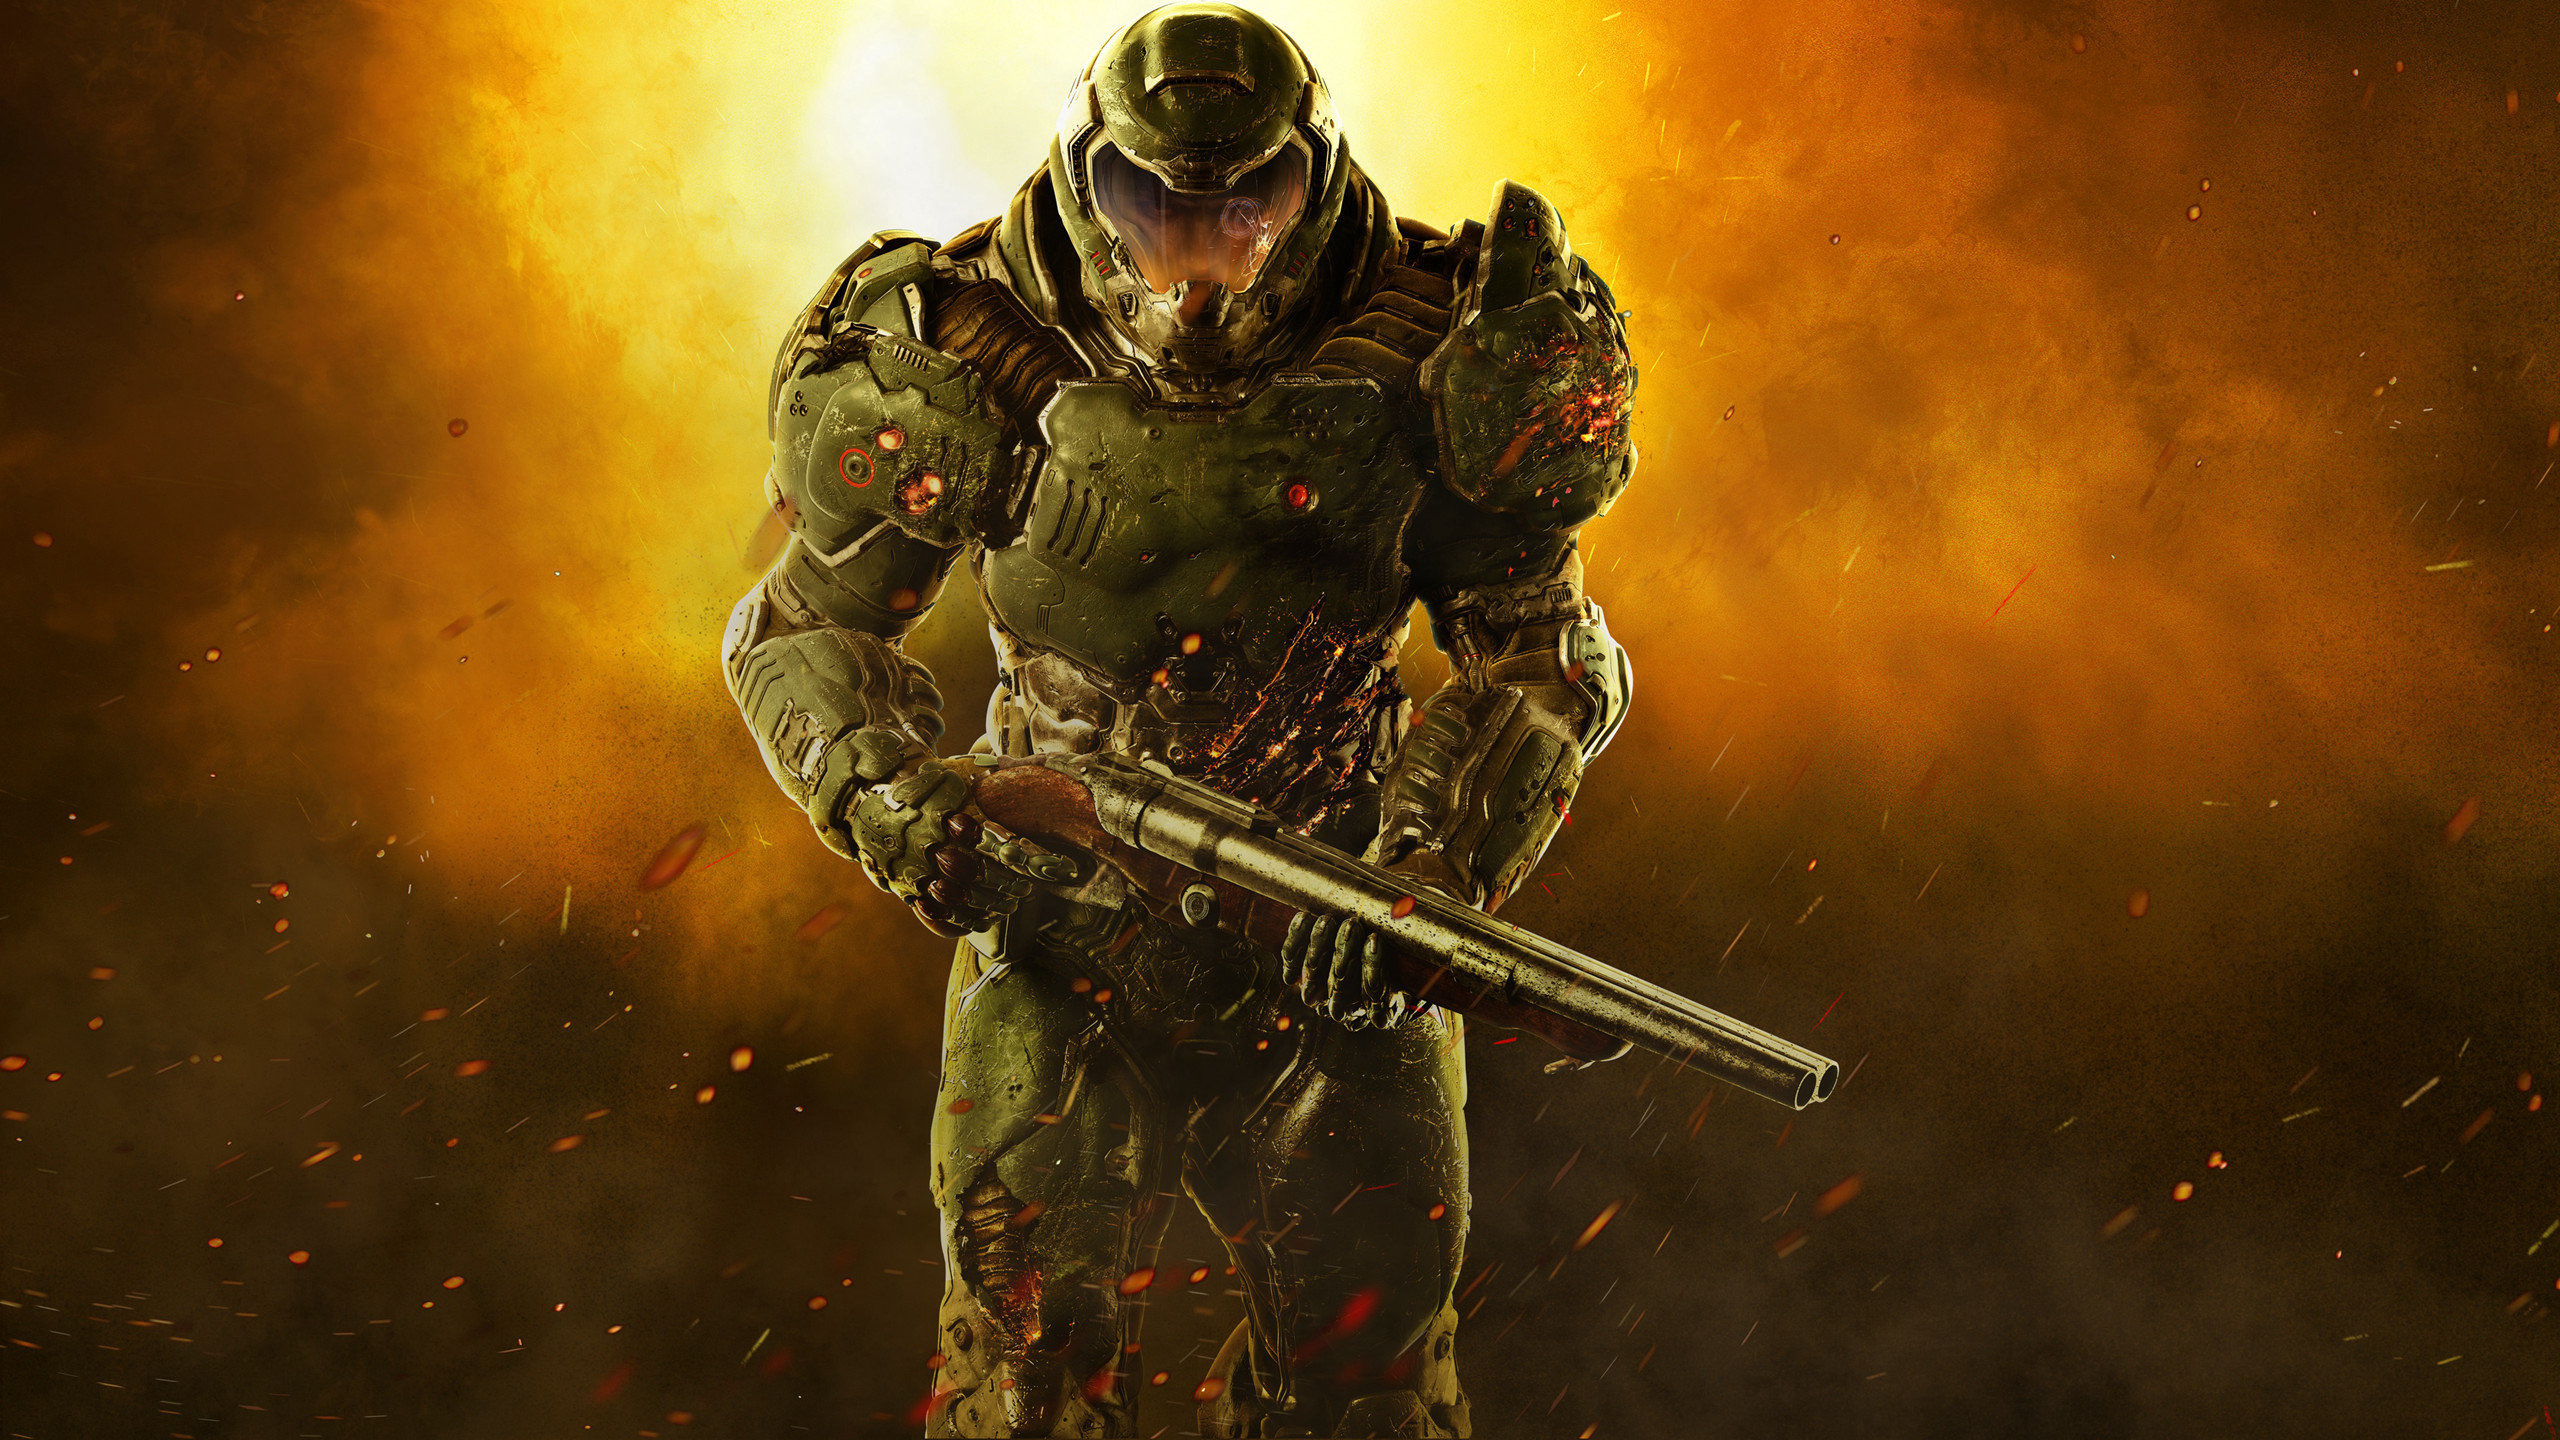 未来战争类网络游戏《毁灭战士》高清原画壁纸图片